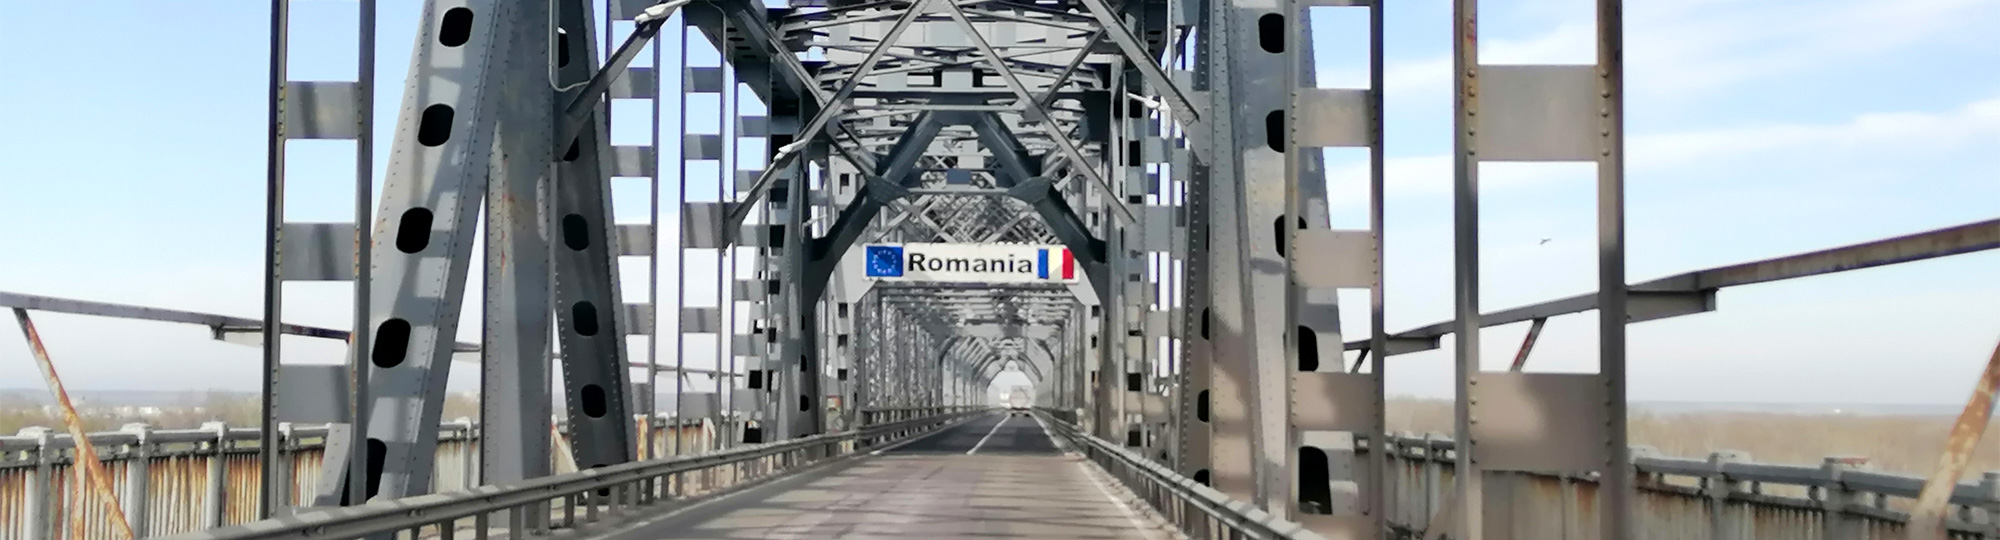 Être libre en Roumanie